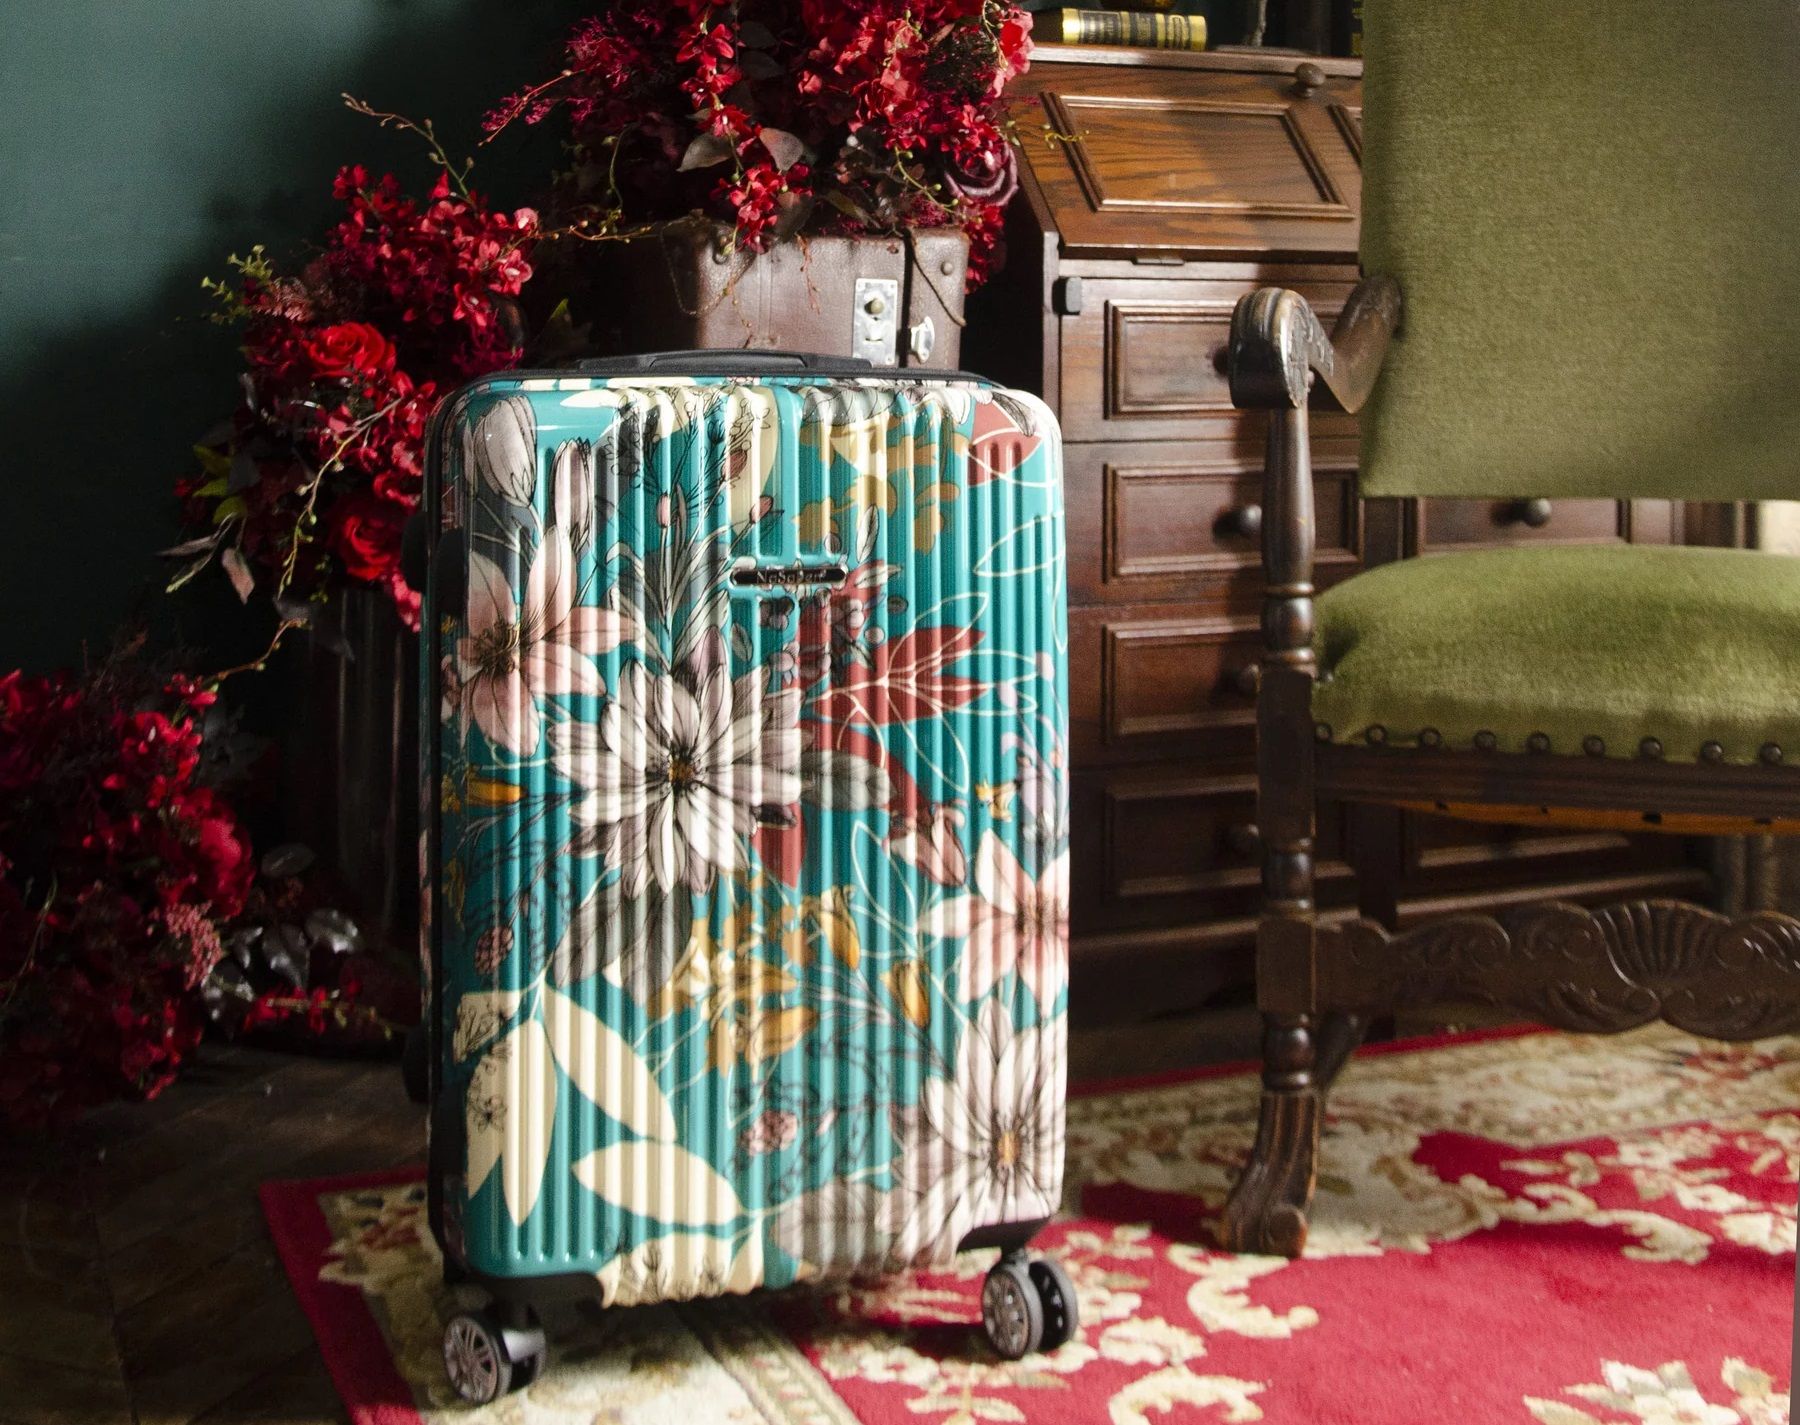 NaSaDen 納莎登行李箱是連網紅都喜愛的行李箱品牌